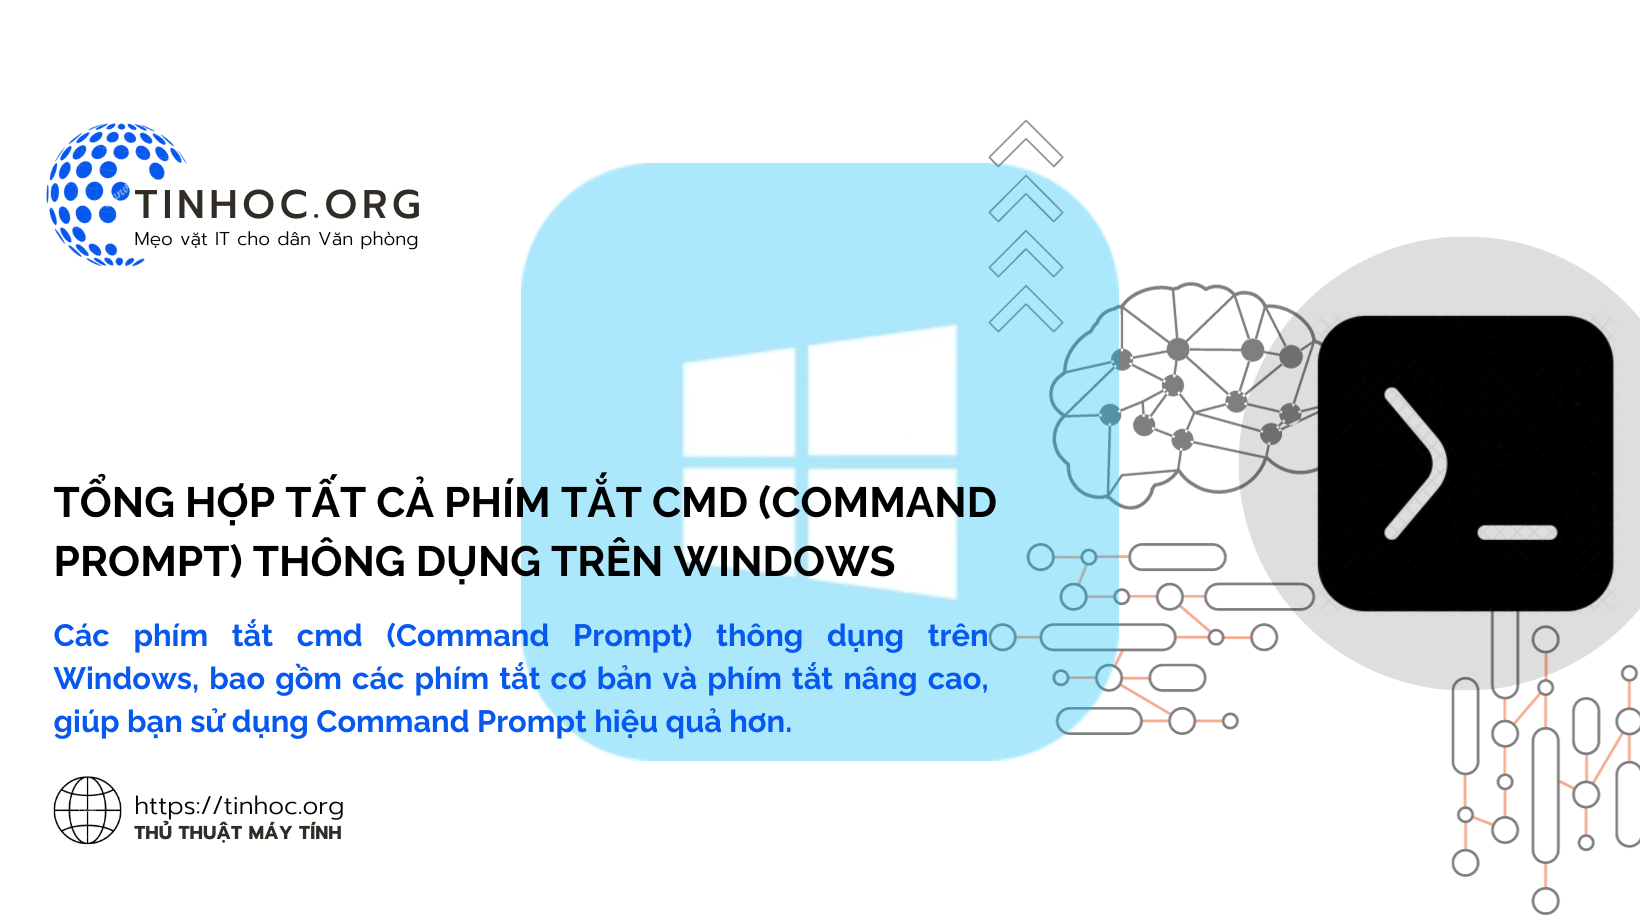 Các phím tắt cmd (Command Prompt) thông dụng trên Windows, bao gồm các phím tắt cơ bản và phím tắt nâng cao, giúp bạn sử dụng Command Prompt hiệu quả hơn.